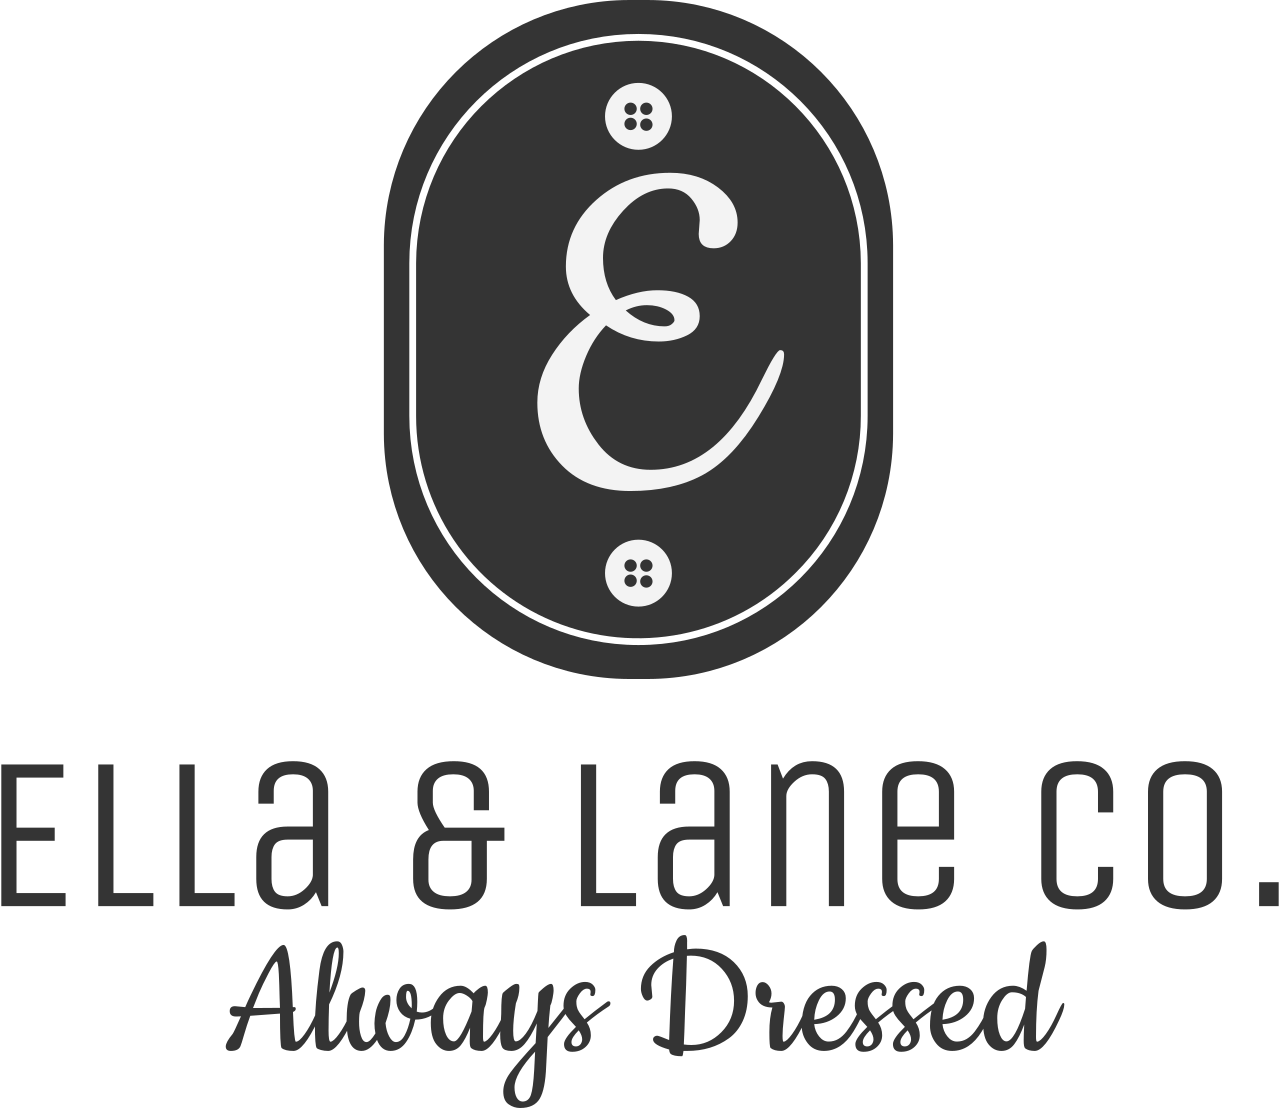 Ella & Lane Co.'s web page